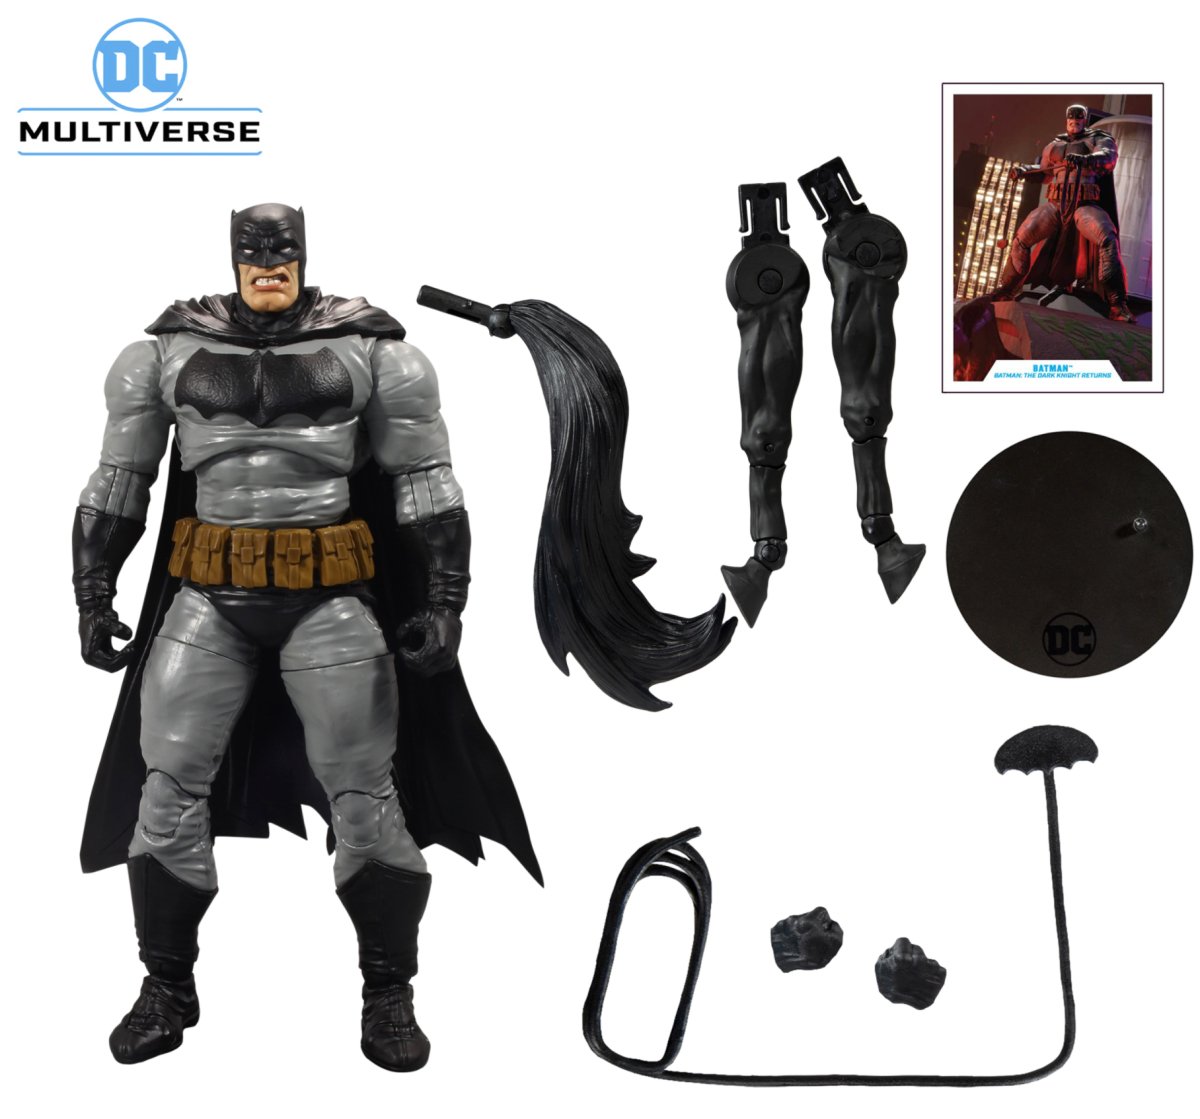 DC Multiverse Build A Action Figure Batman (Batman: The Dark Knight Returns) 18 cm - Walt's Comic Shop